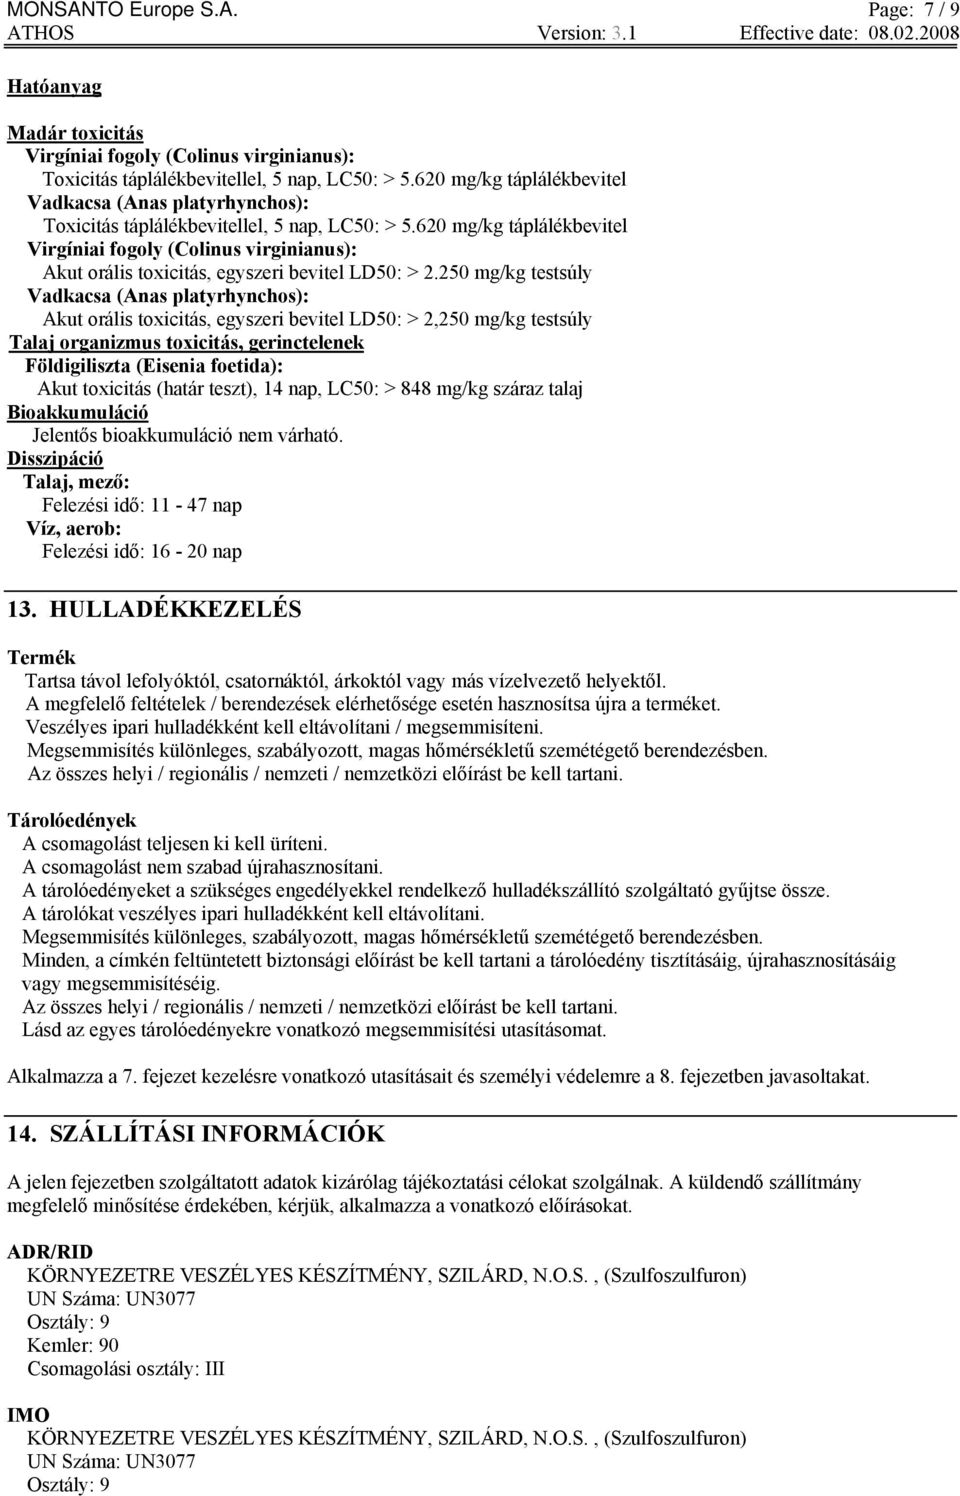 620 mg/kg táplálékbevitel Virgíniai fogoly (Colinus virginianus): Akut orális toxicitás, egyszeri bevitel LD50: > 2.